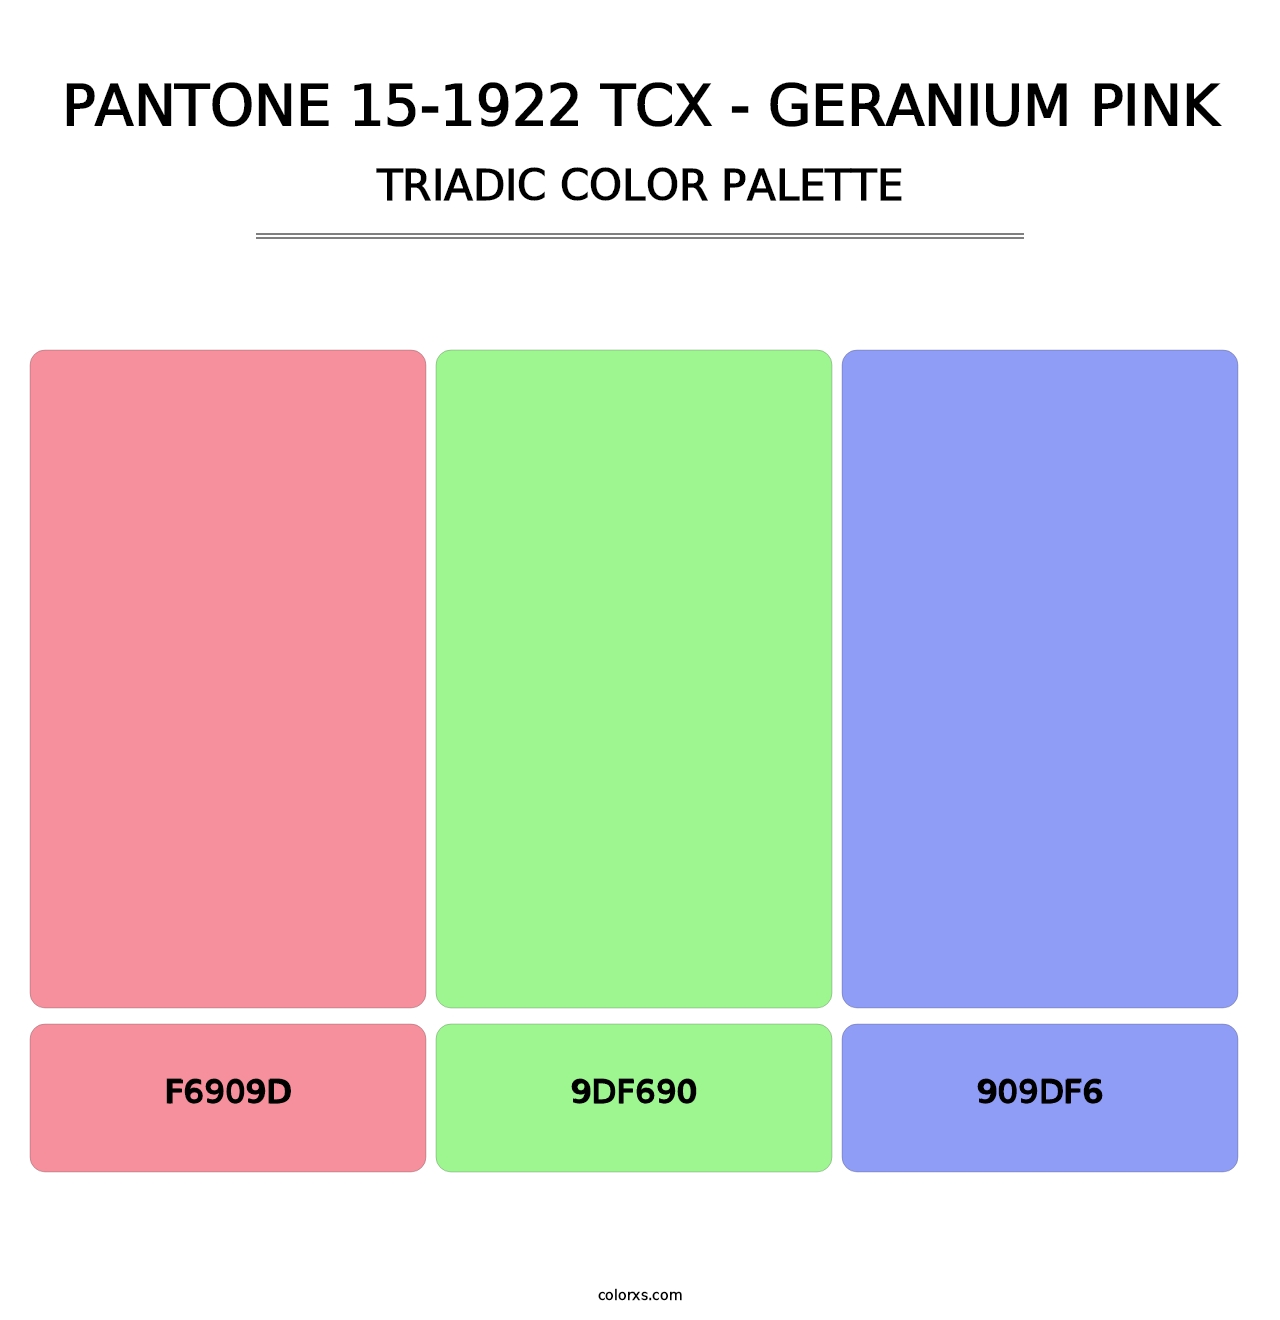 PANTONE 15-1922 TCX - Geranium Pink - Triadic Color Palette